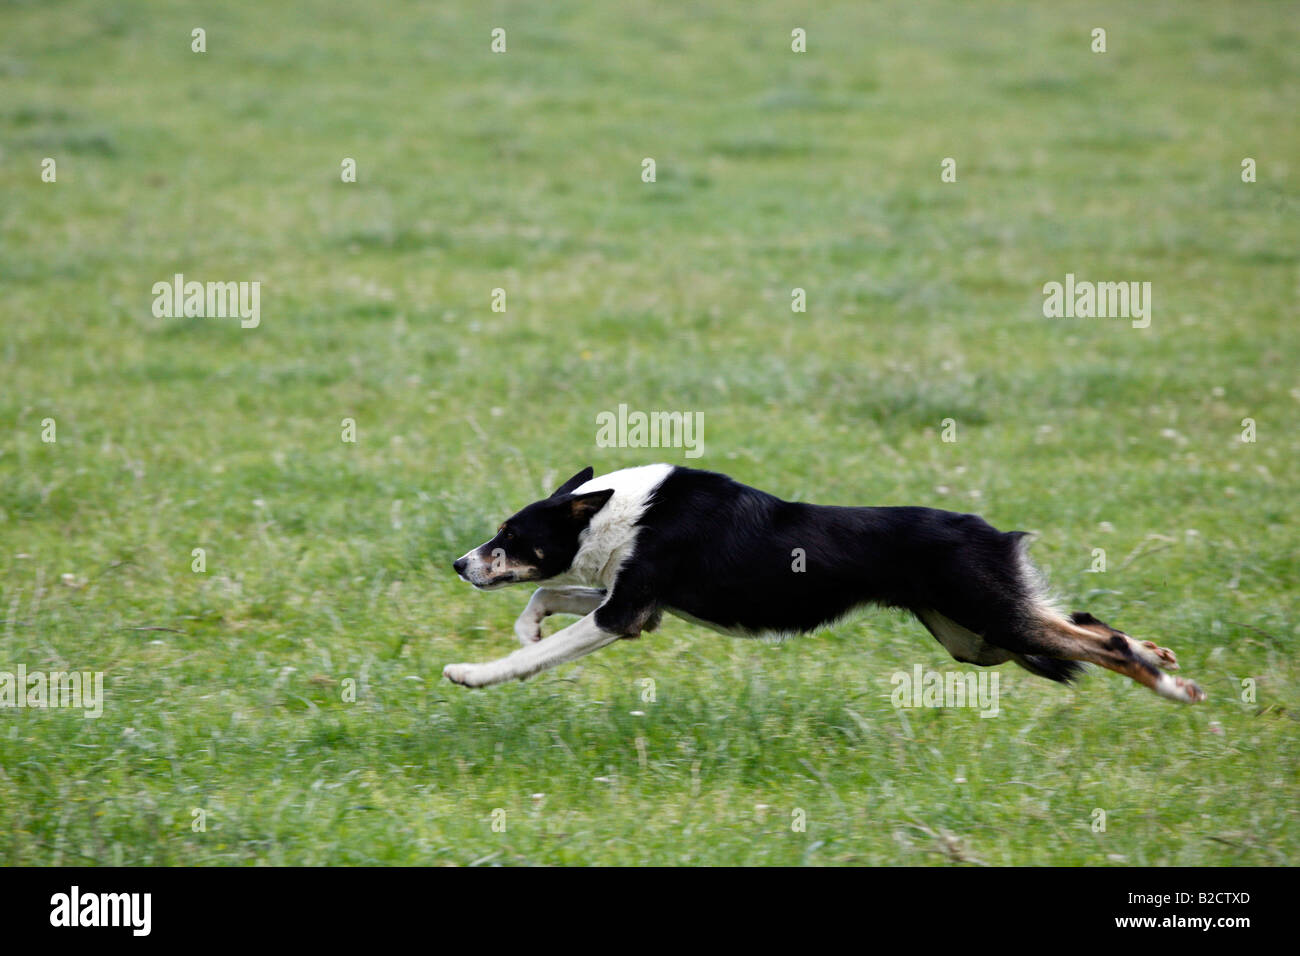 Border collie en herbe noire et blanche, chiens de berger noirs et blancs à exécution rapide dans un champ, lors des essais sur les chiens de berger écossais, Royaume-Uni Banque D'Images